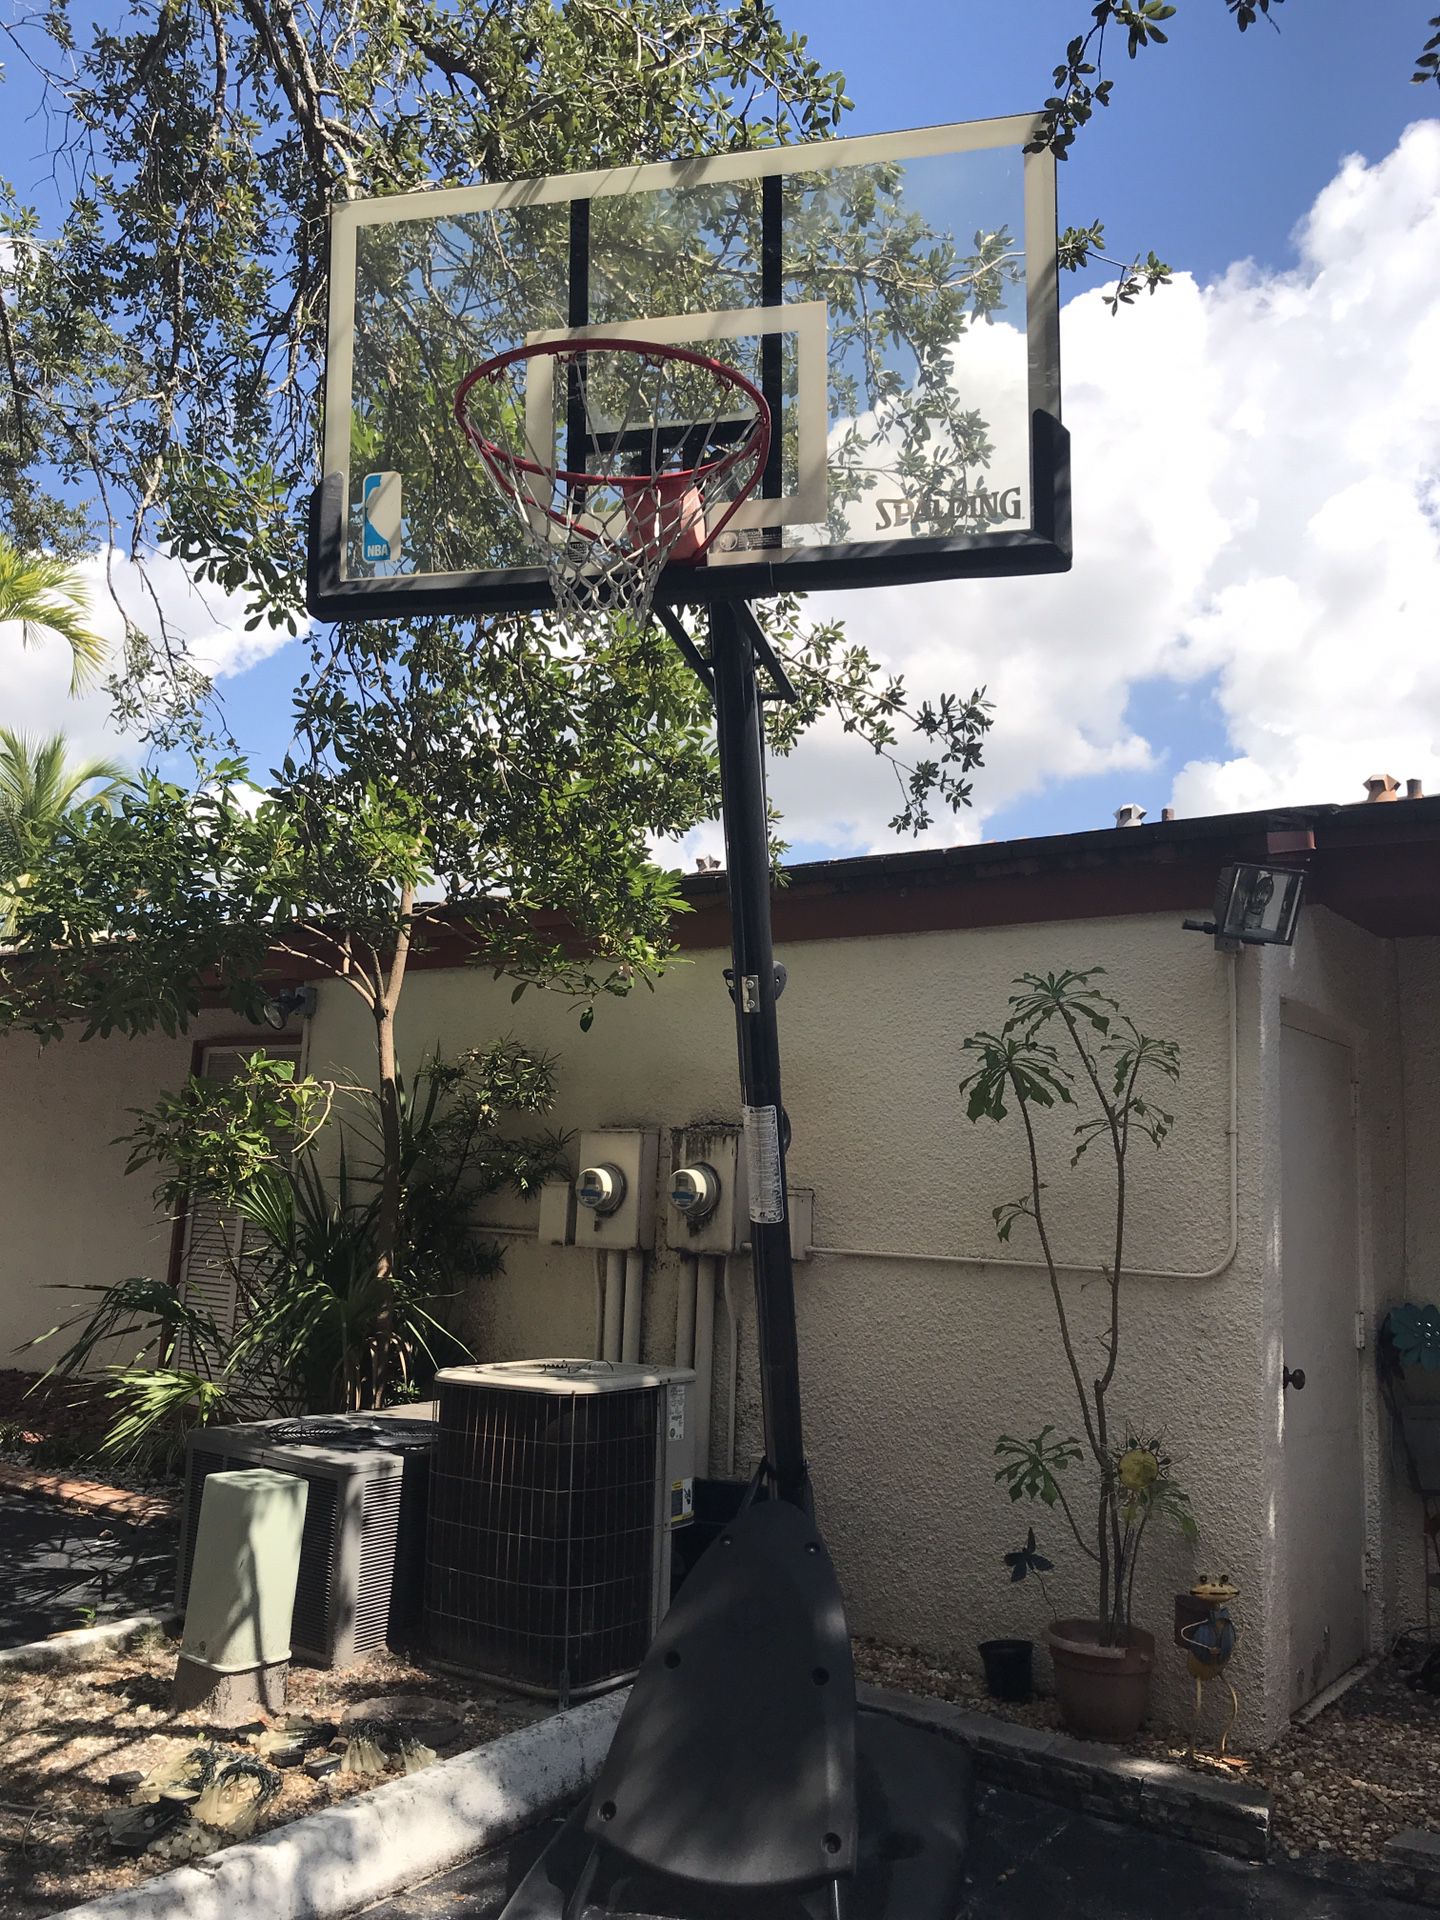 Spaulding NBA Adjustable Basket Ball hoop